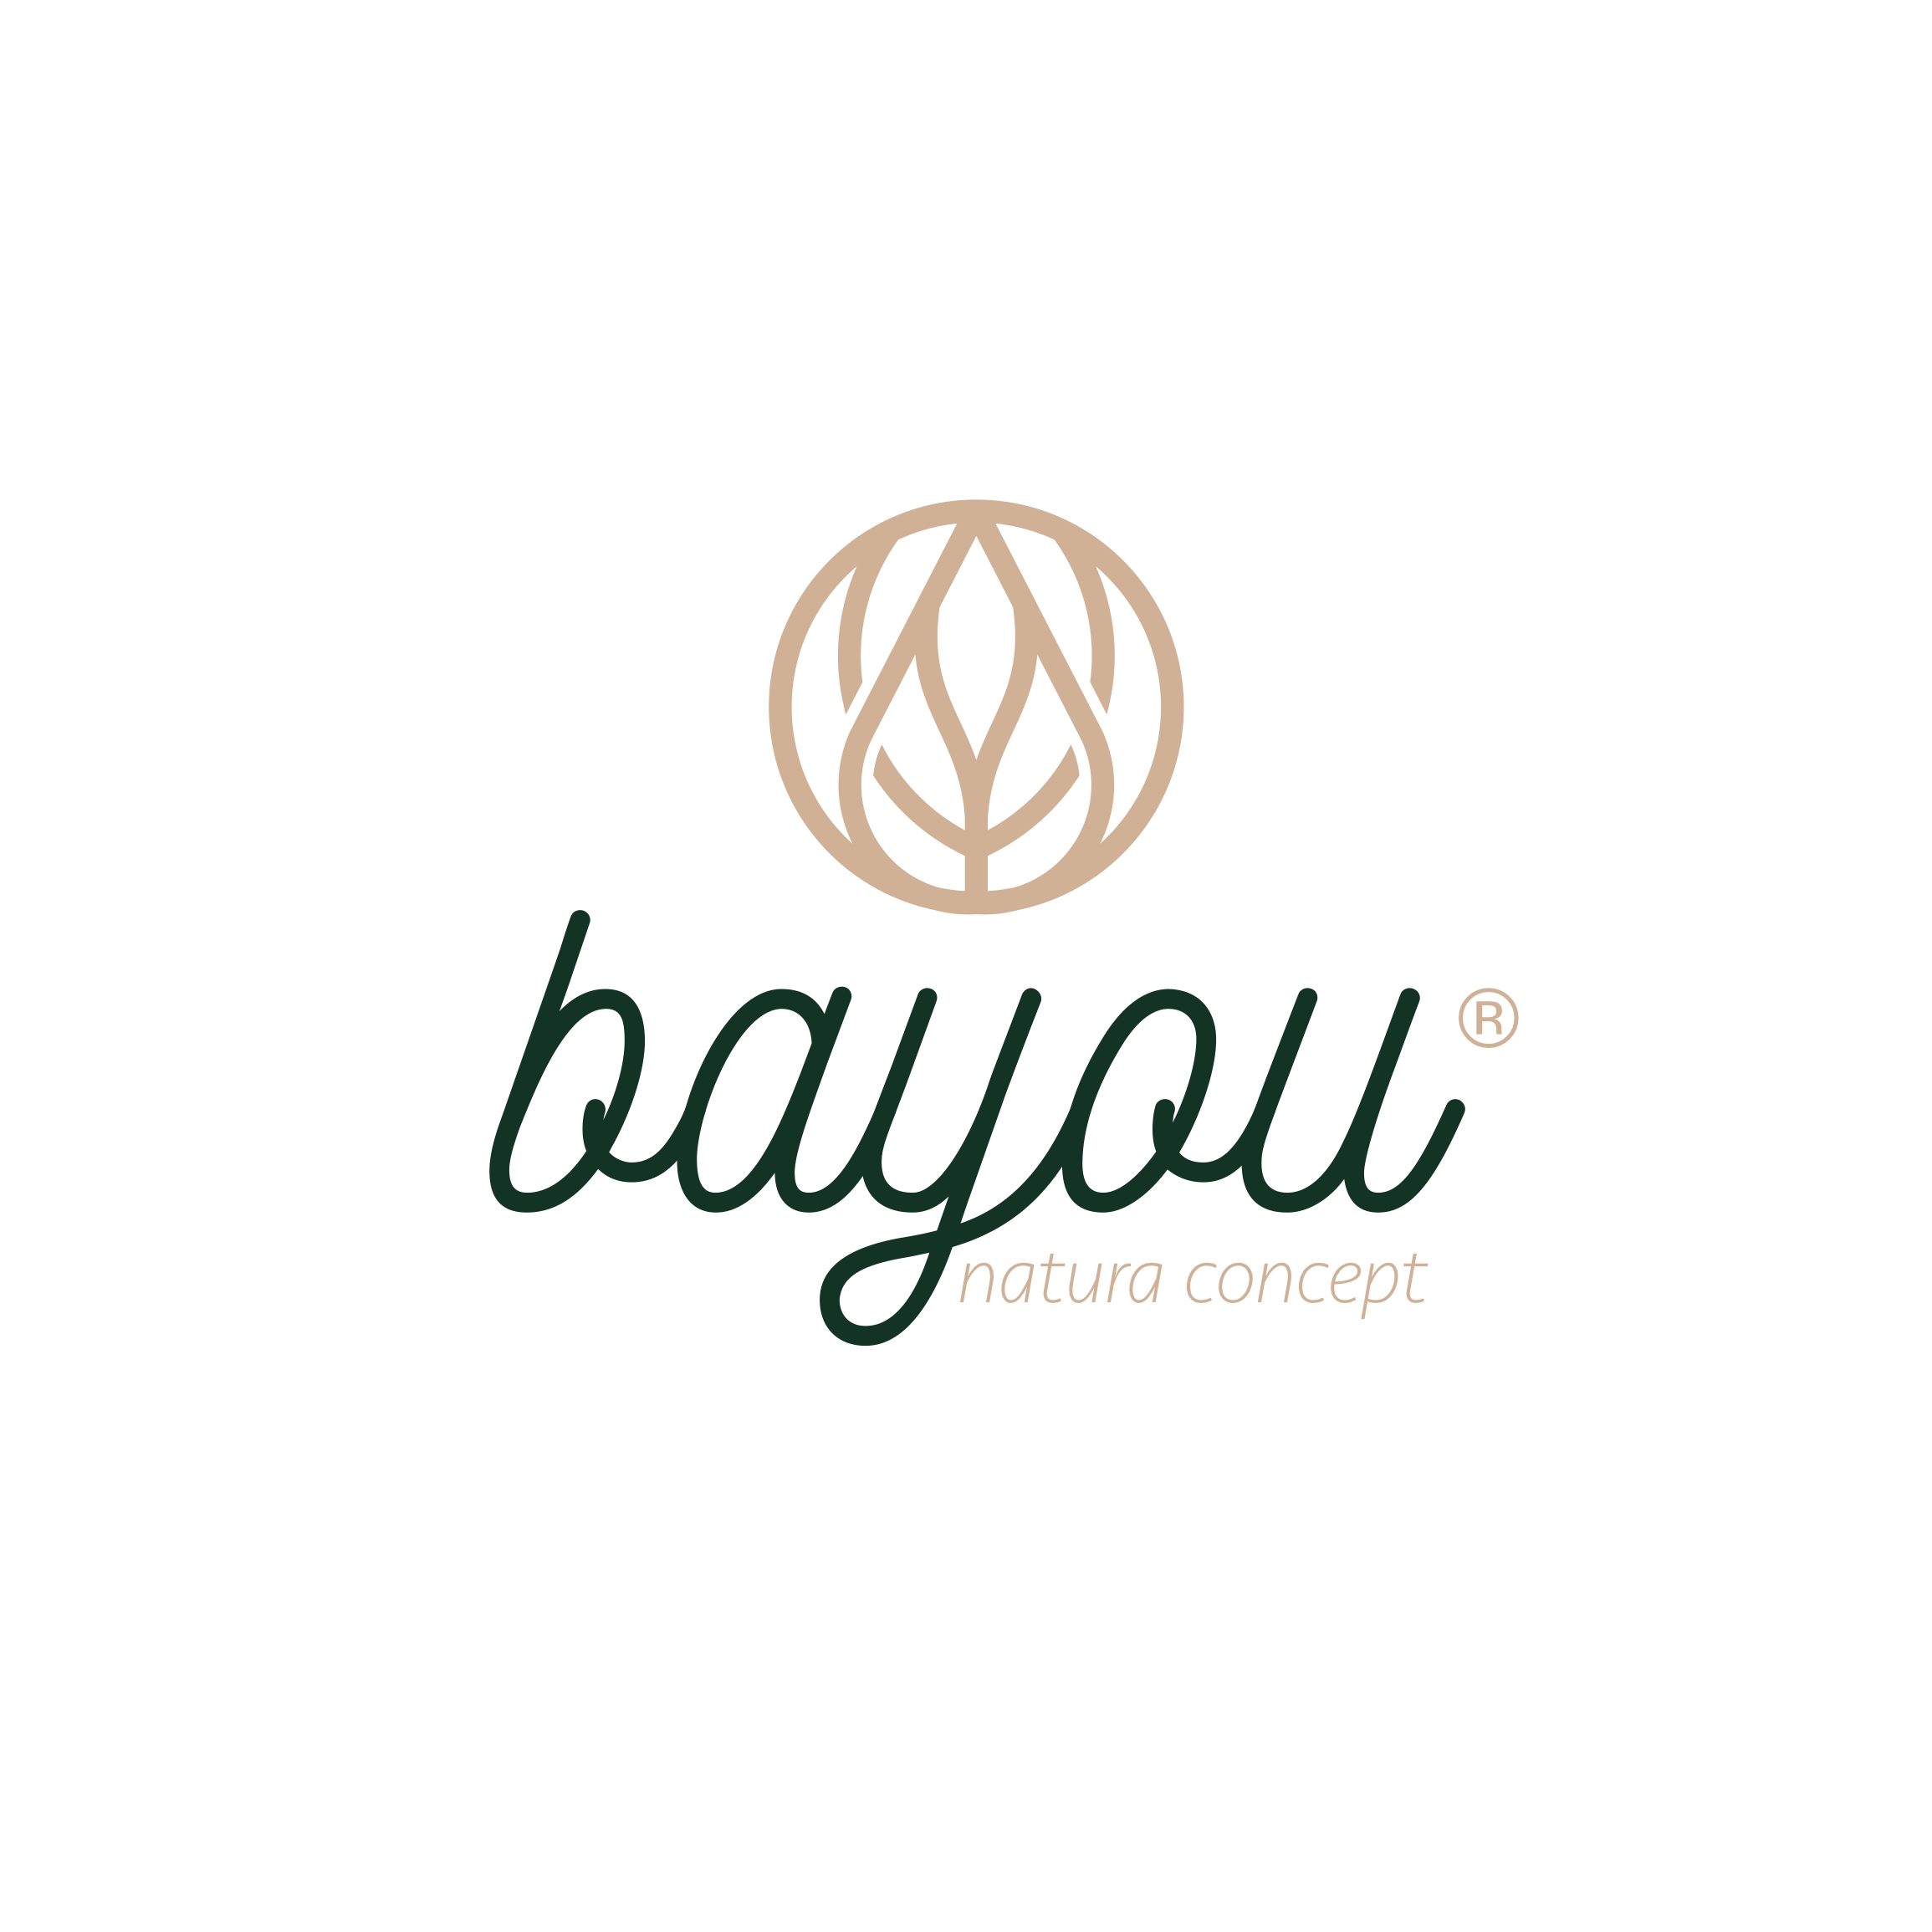 bayou